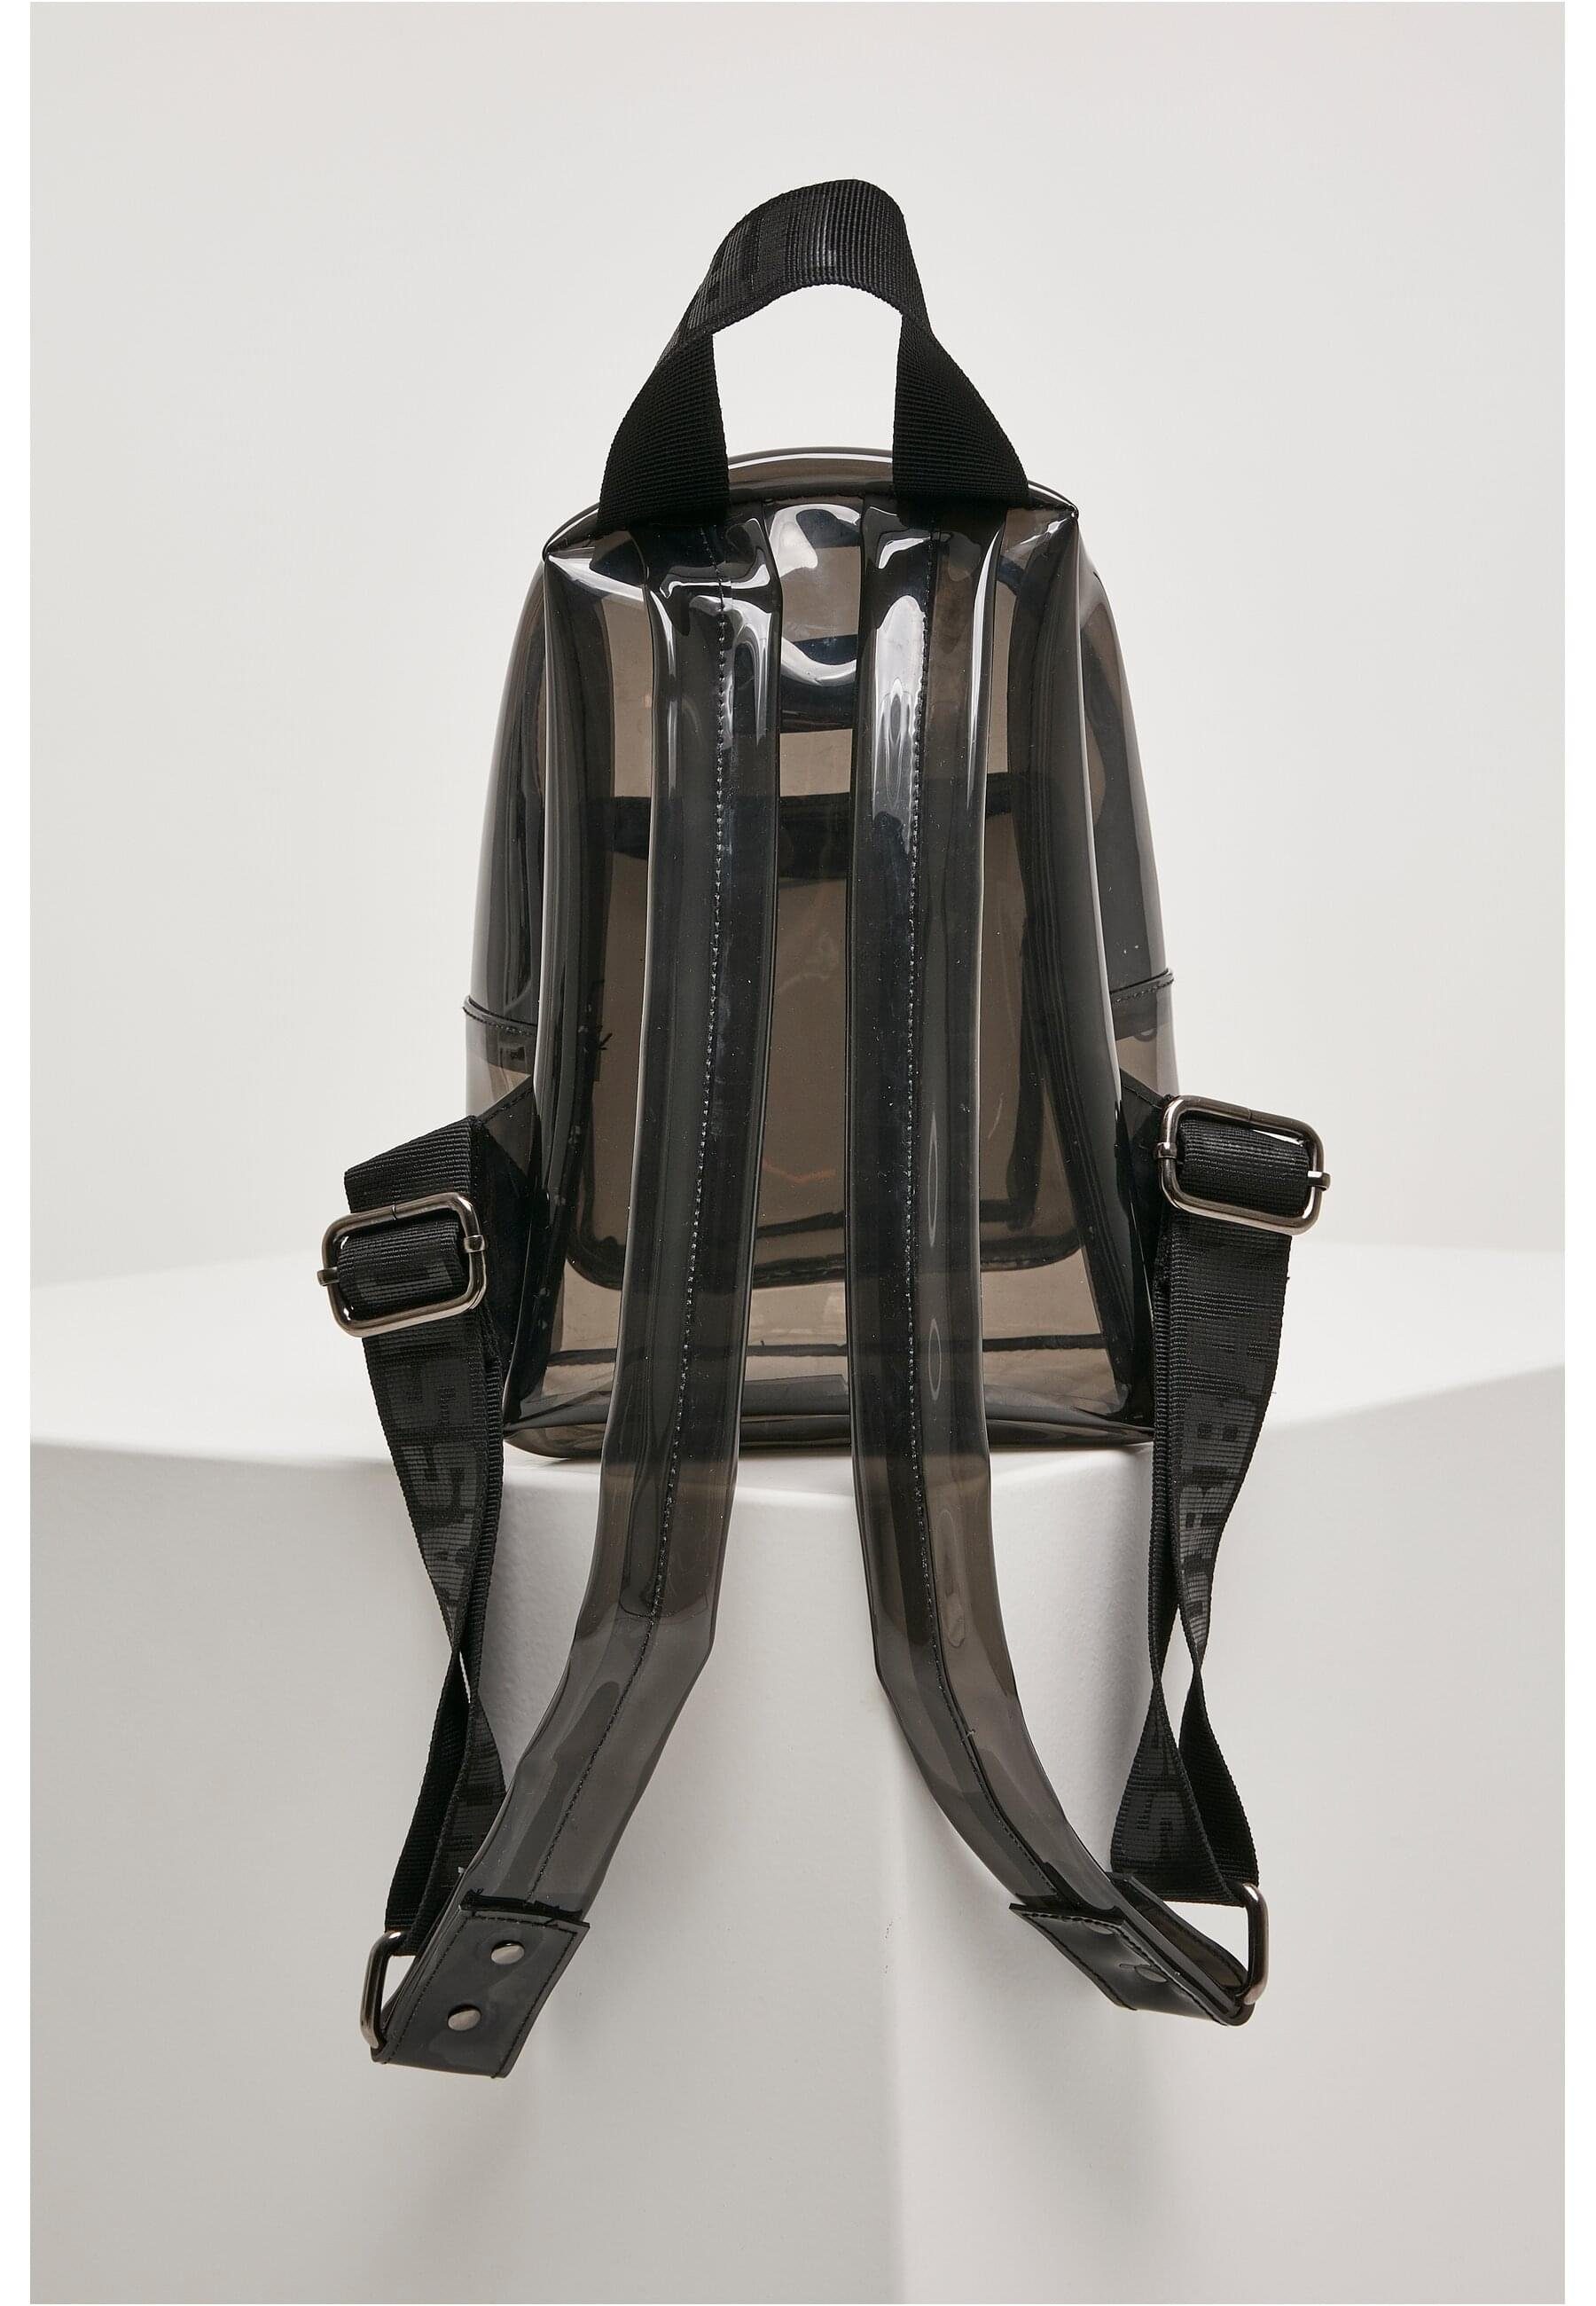 CLASSICS Mini Rucksack Transparent URBAN Backpack Unisex